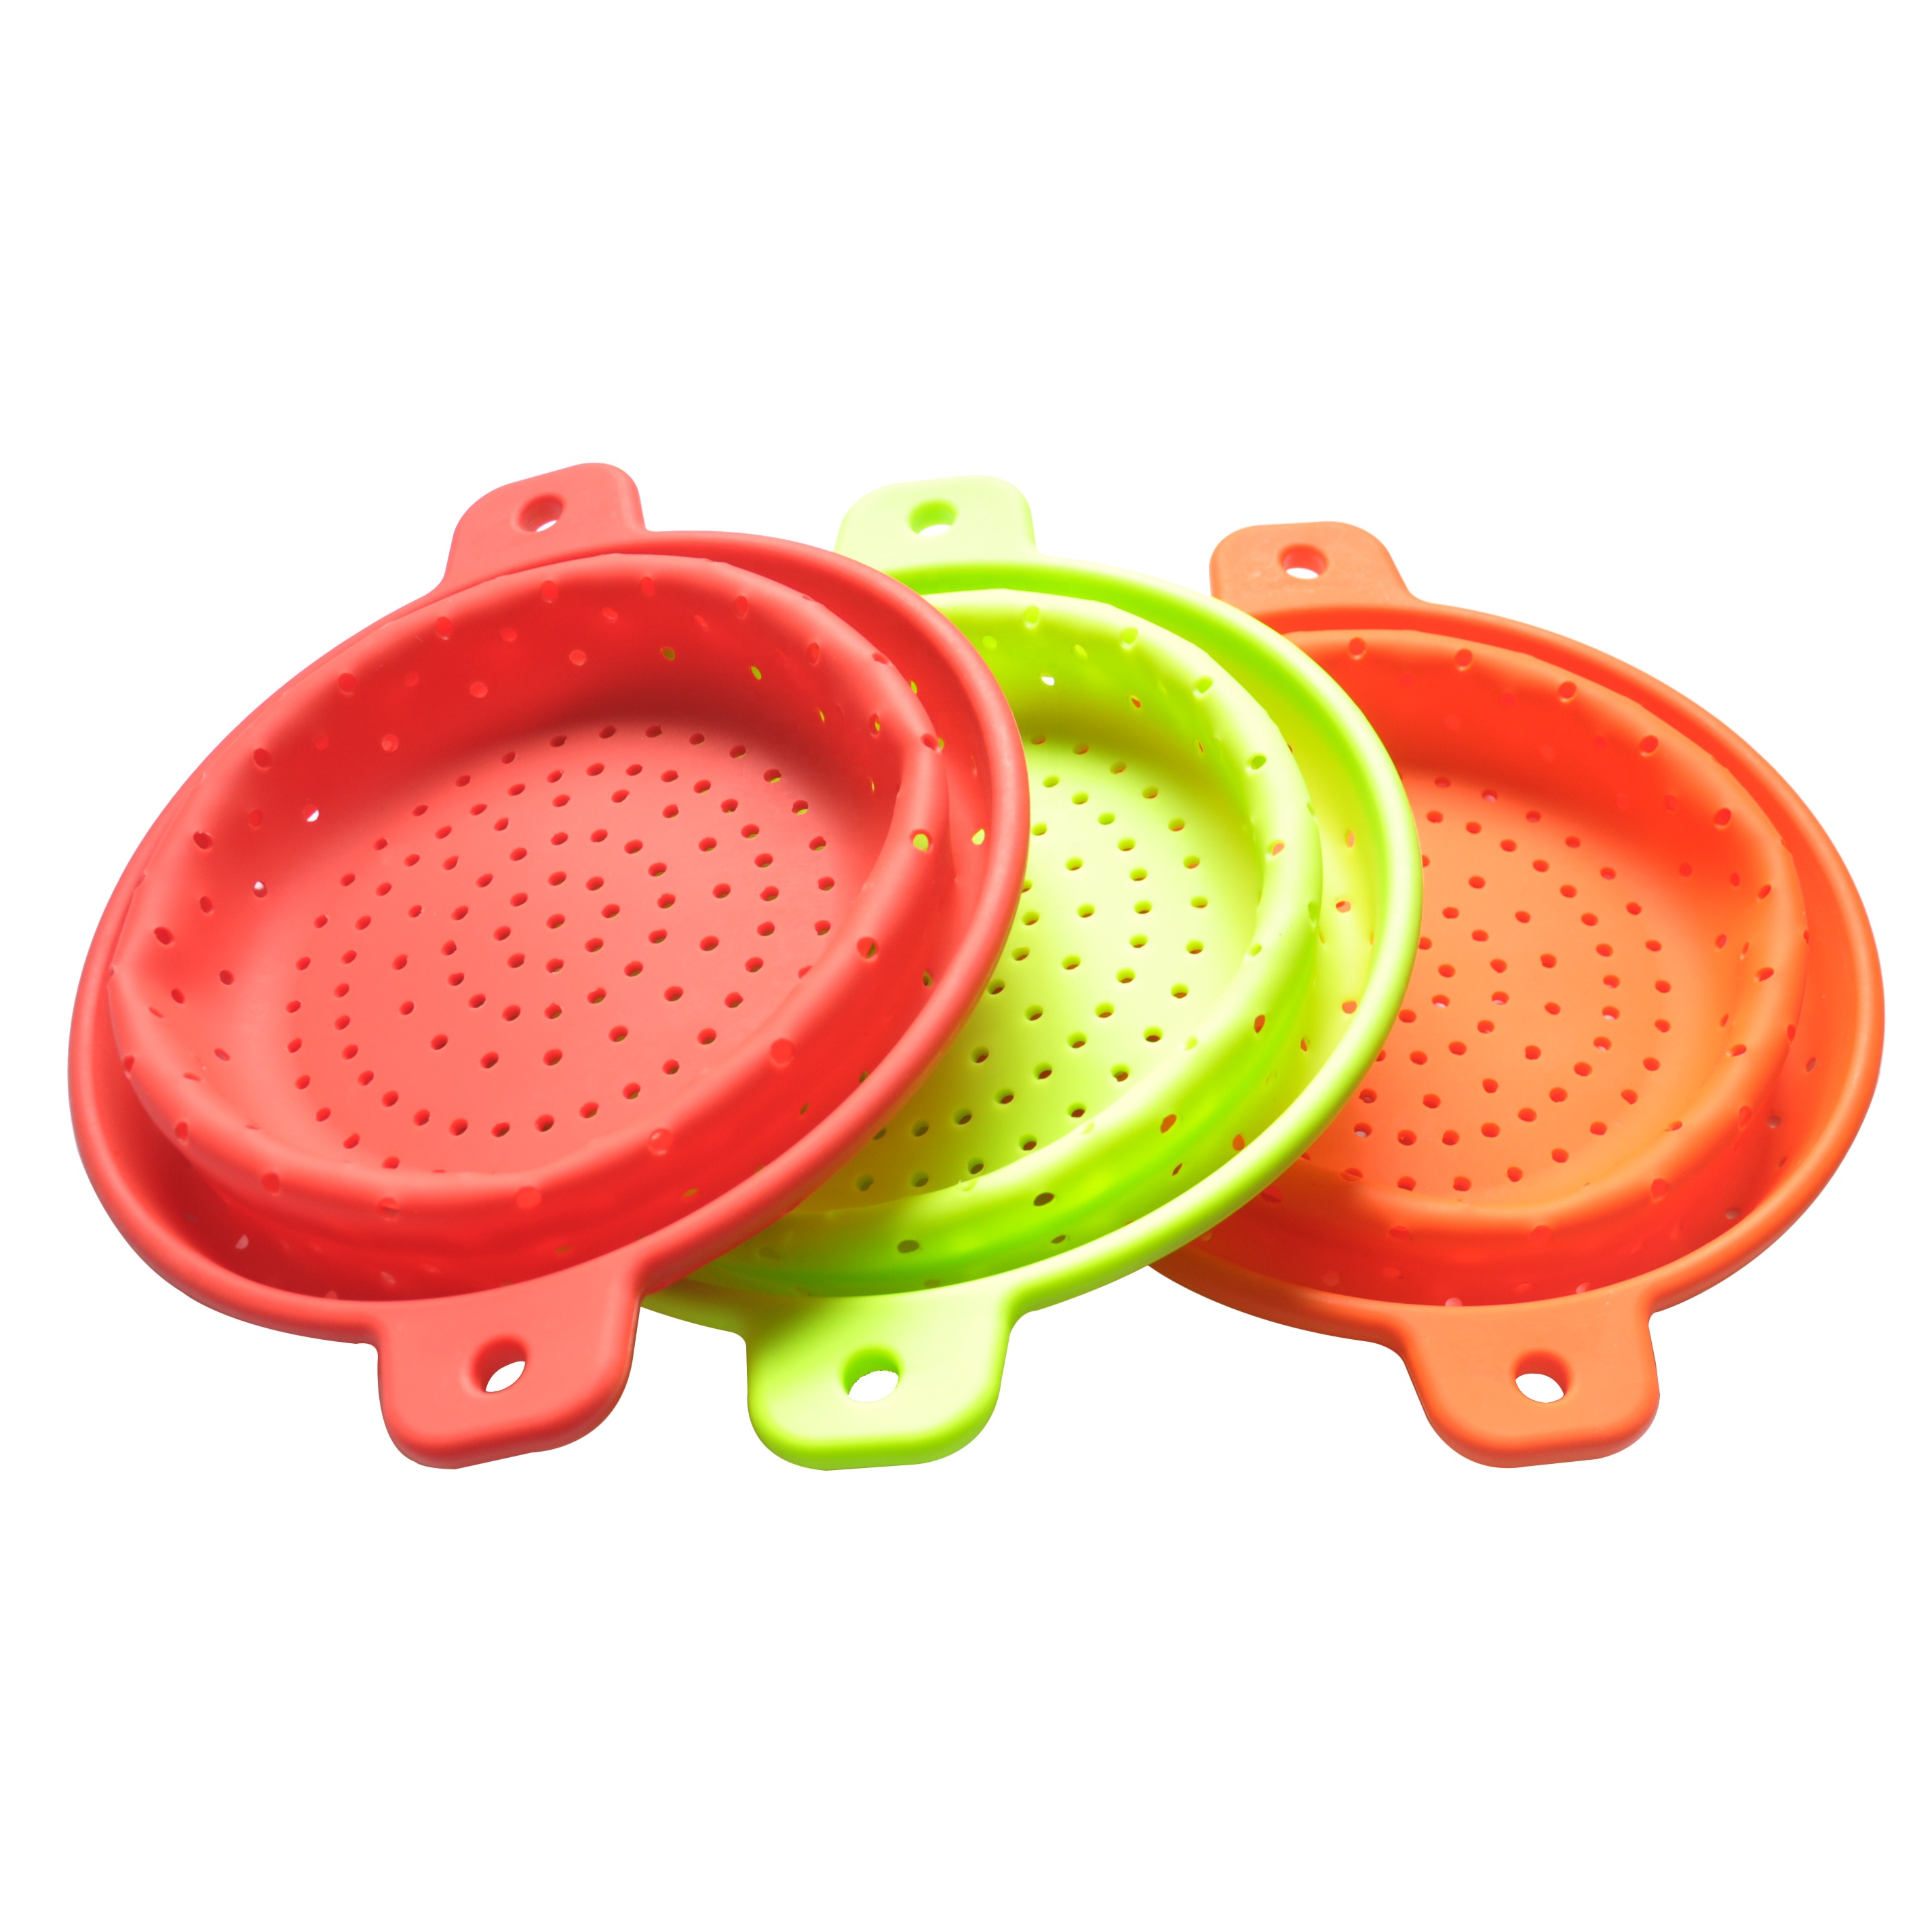 Strainer Vegetable Washing Basket (4)